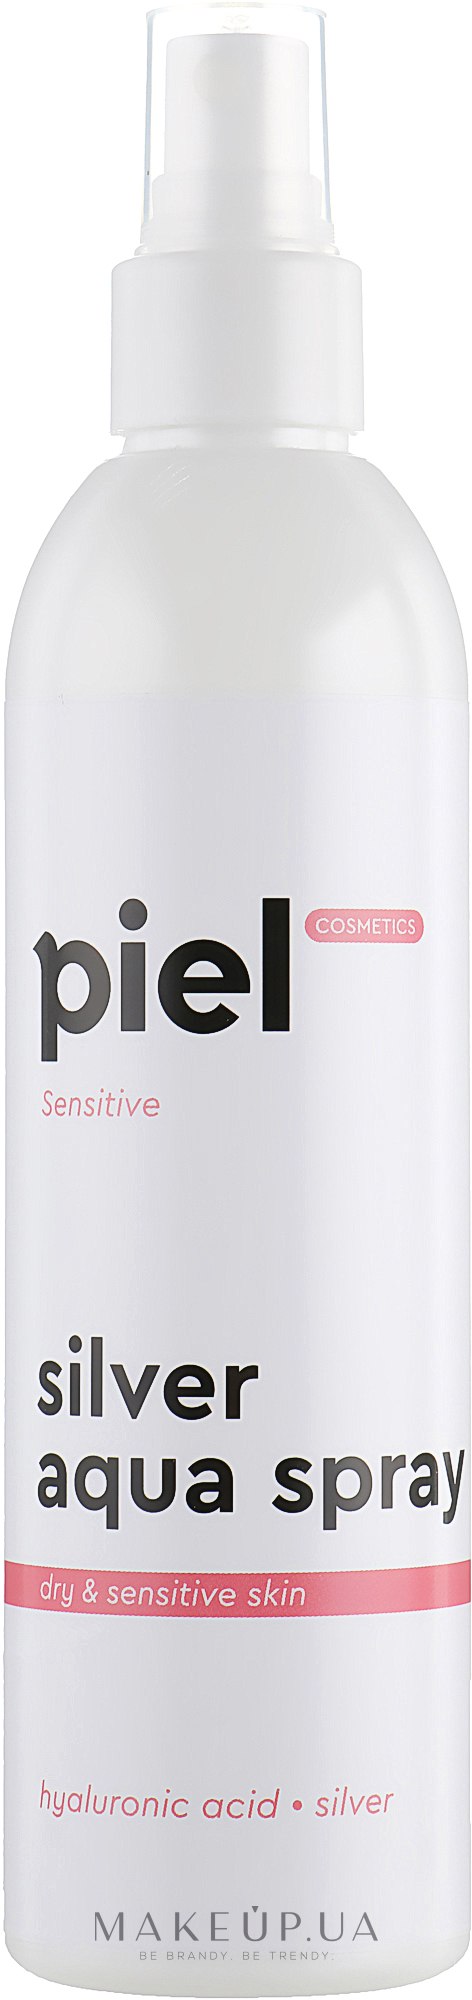 Зволожуючий спрей для сухої/чутливої шкіри - Piel cosmetics Silver Aqua Spray — фото 250ml